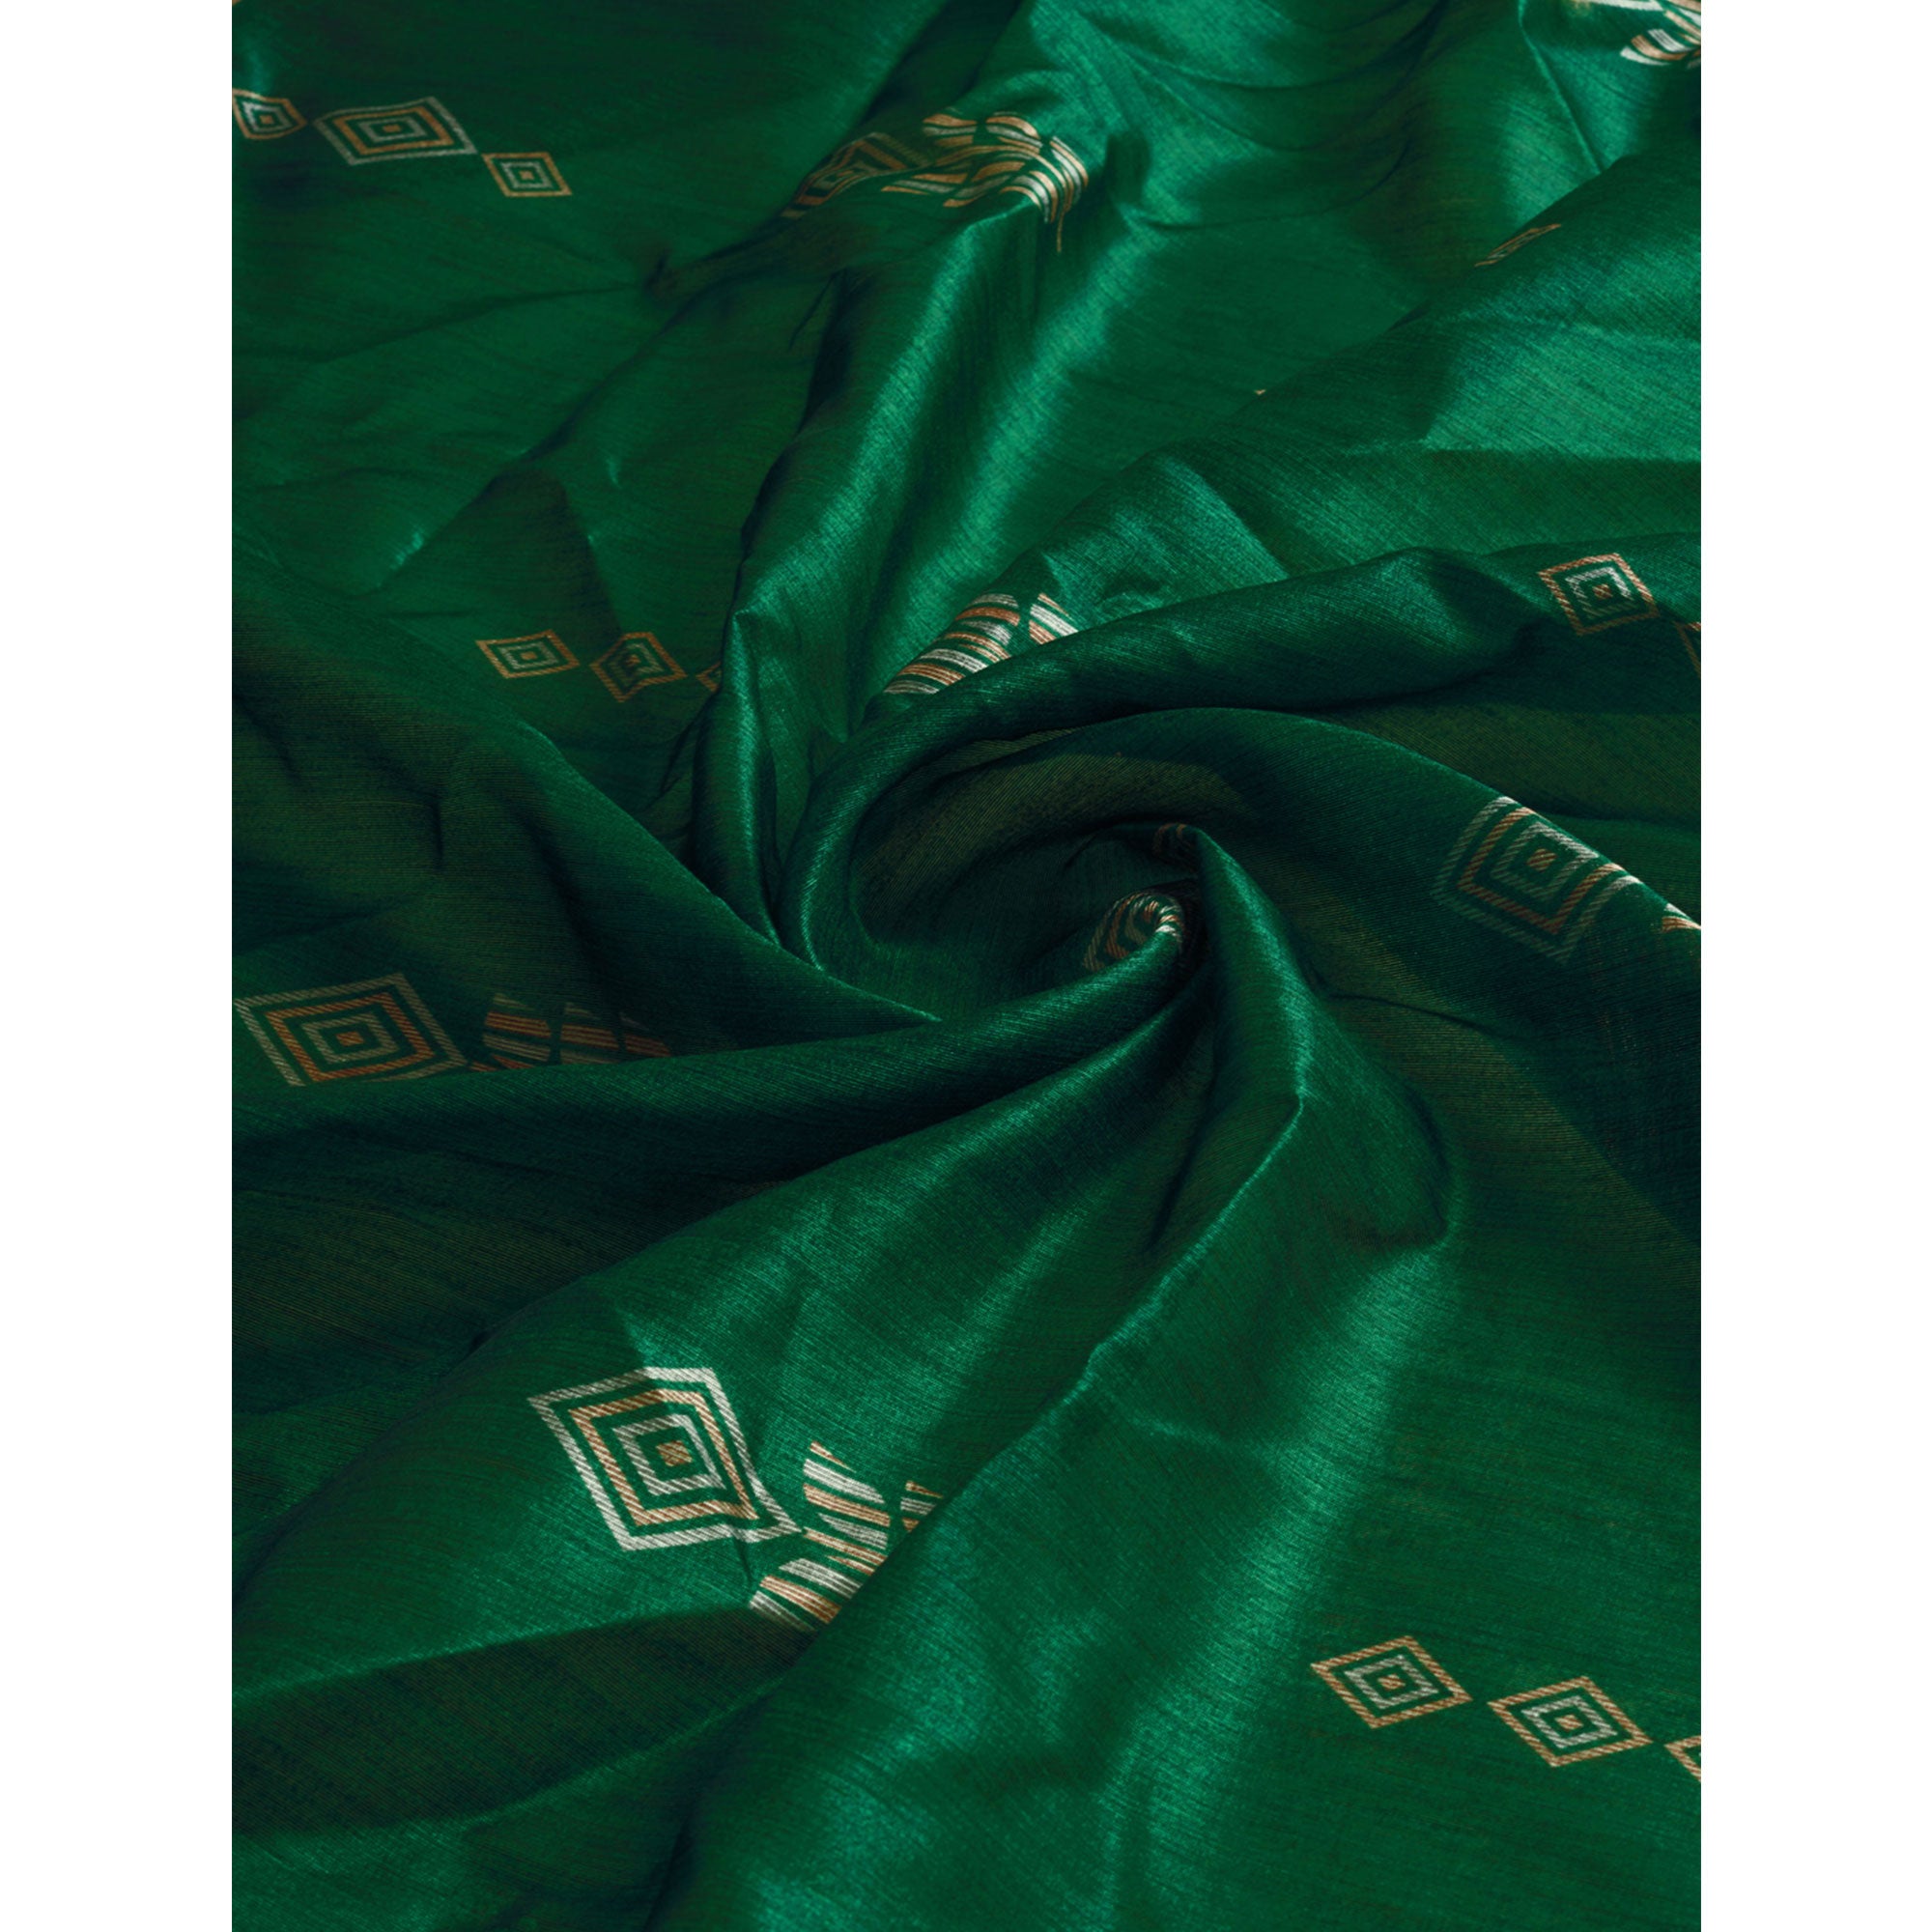 Green Digital Printed Bhagalpuri Silk Saree With Tassels